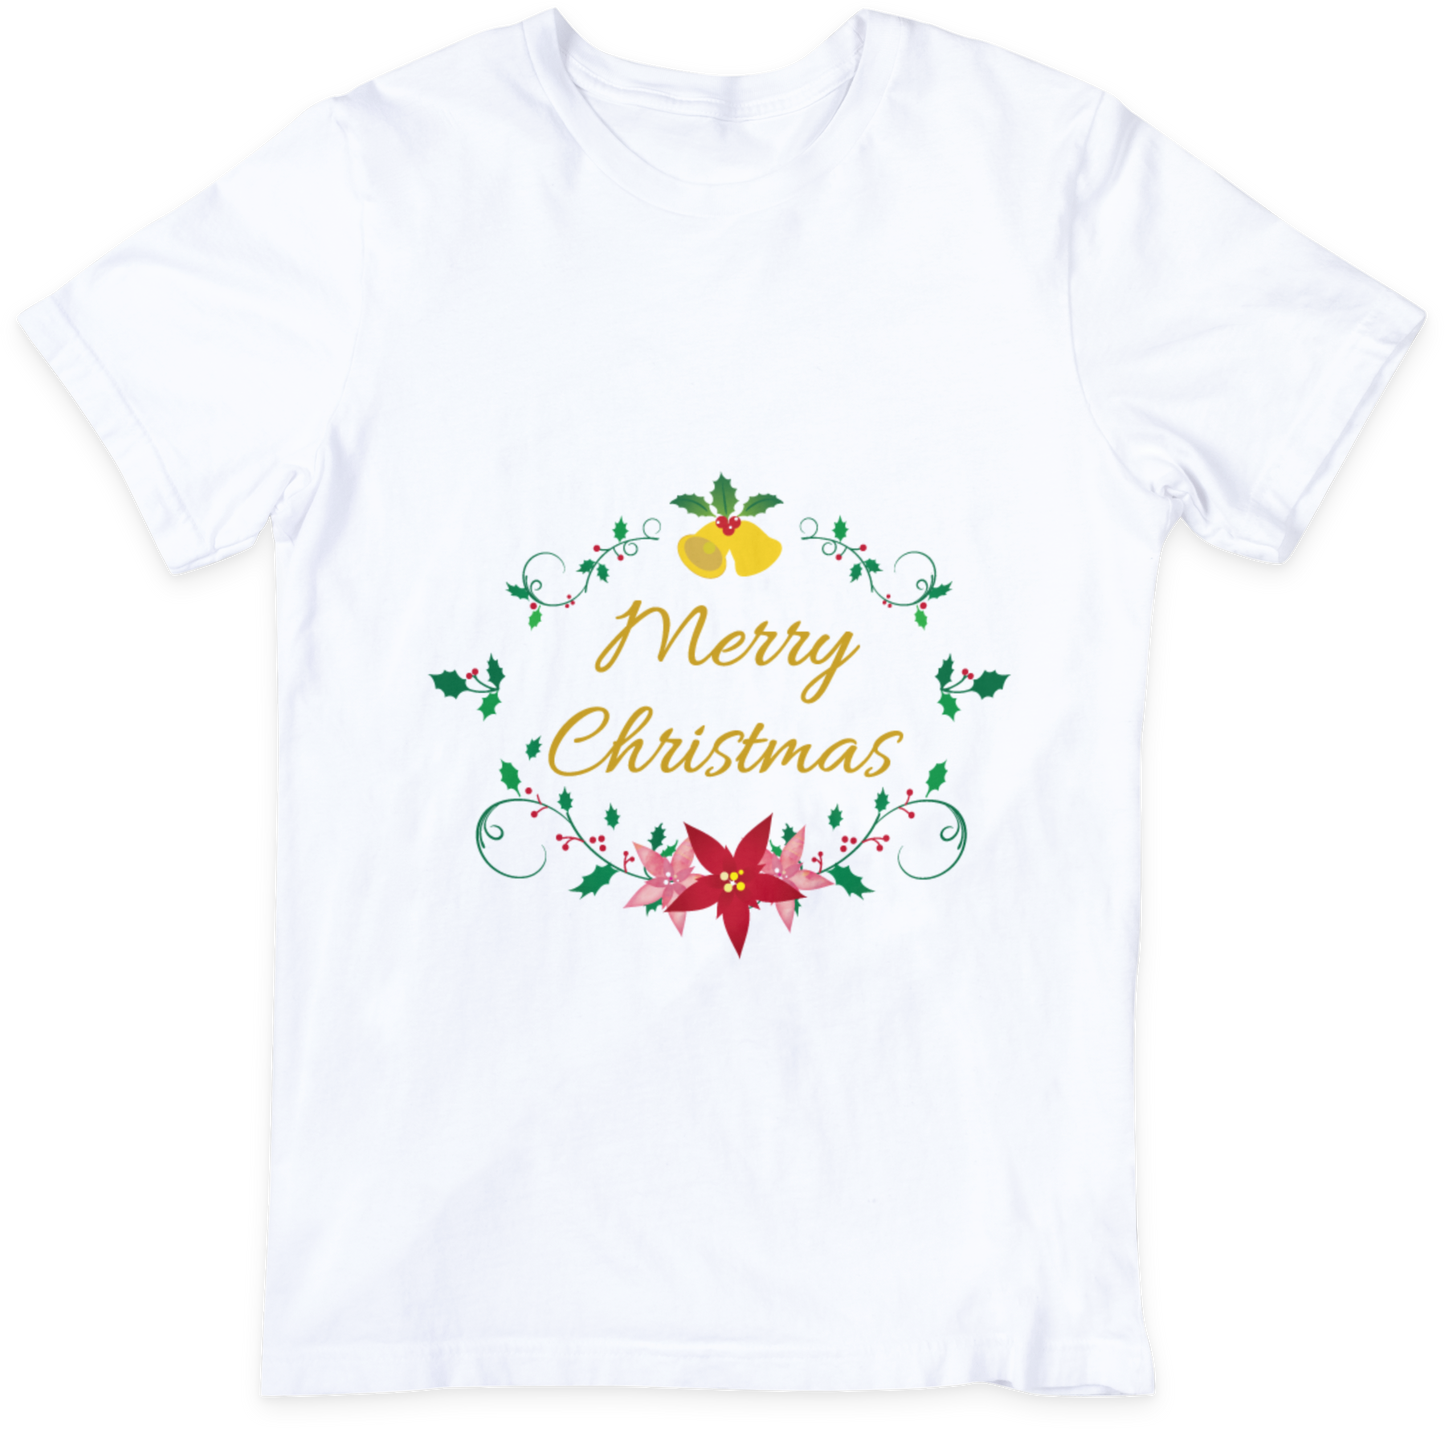 Merry Christmas Designed T-shirt